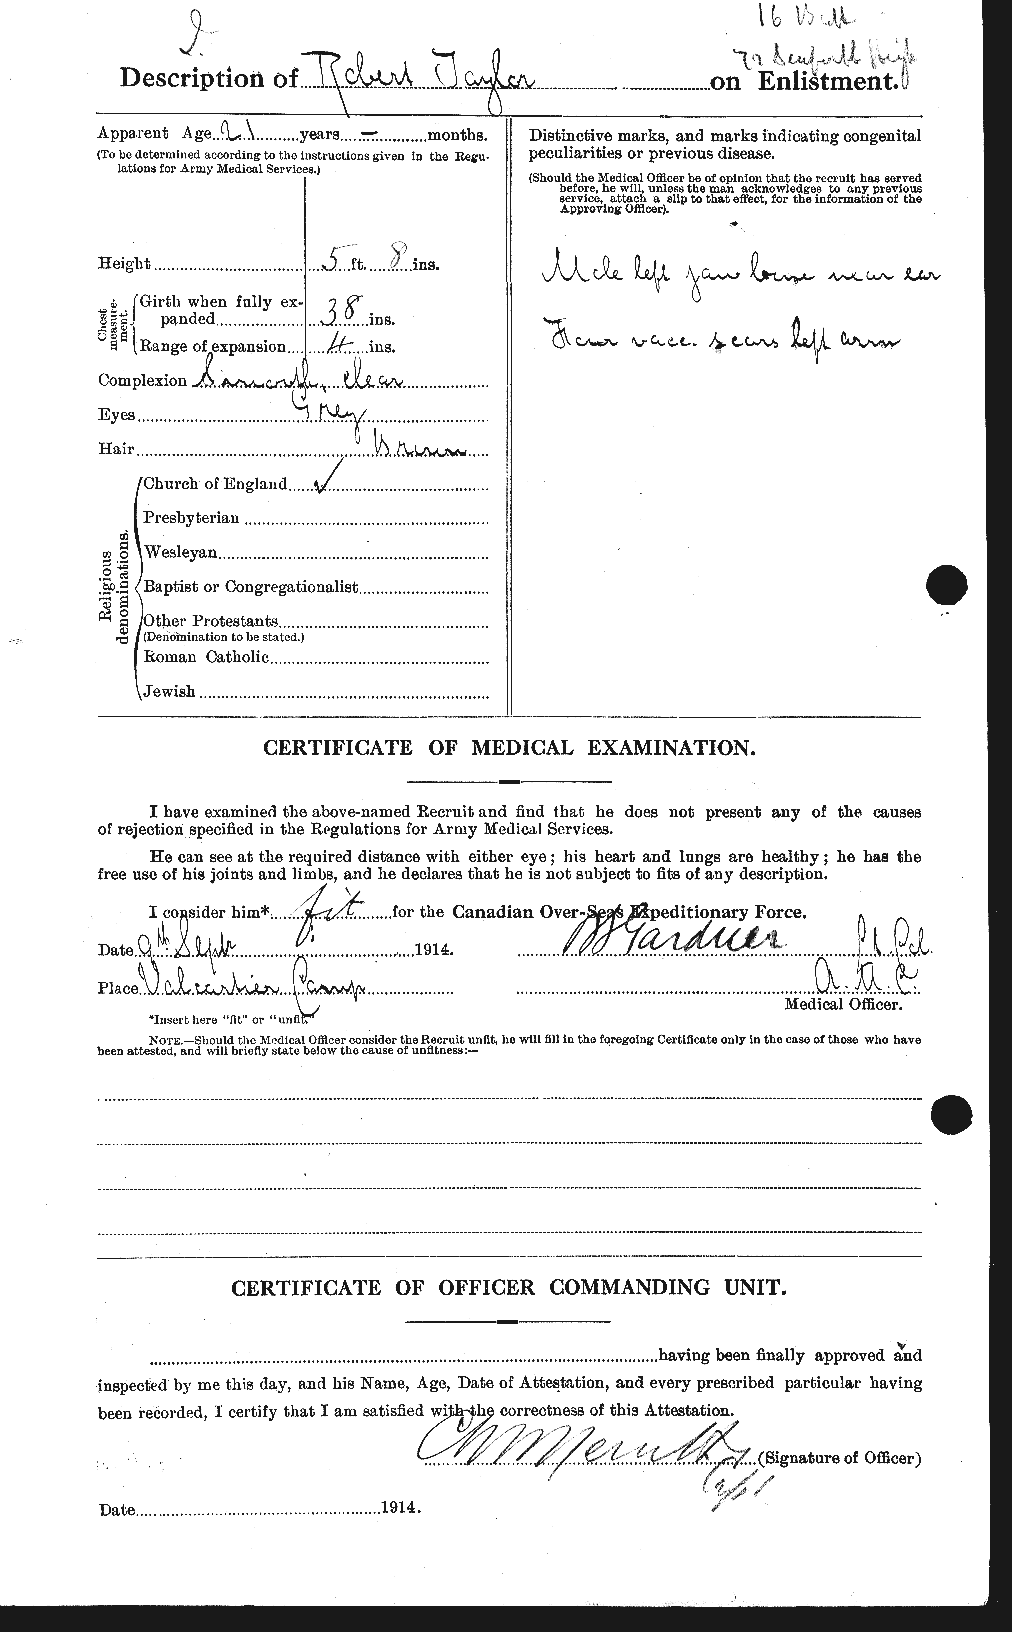 Dossiers du Personnel de la Première Guerre mondiale - CEC 627451b